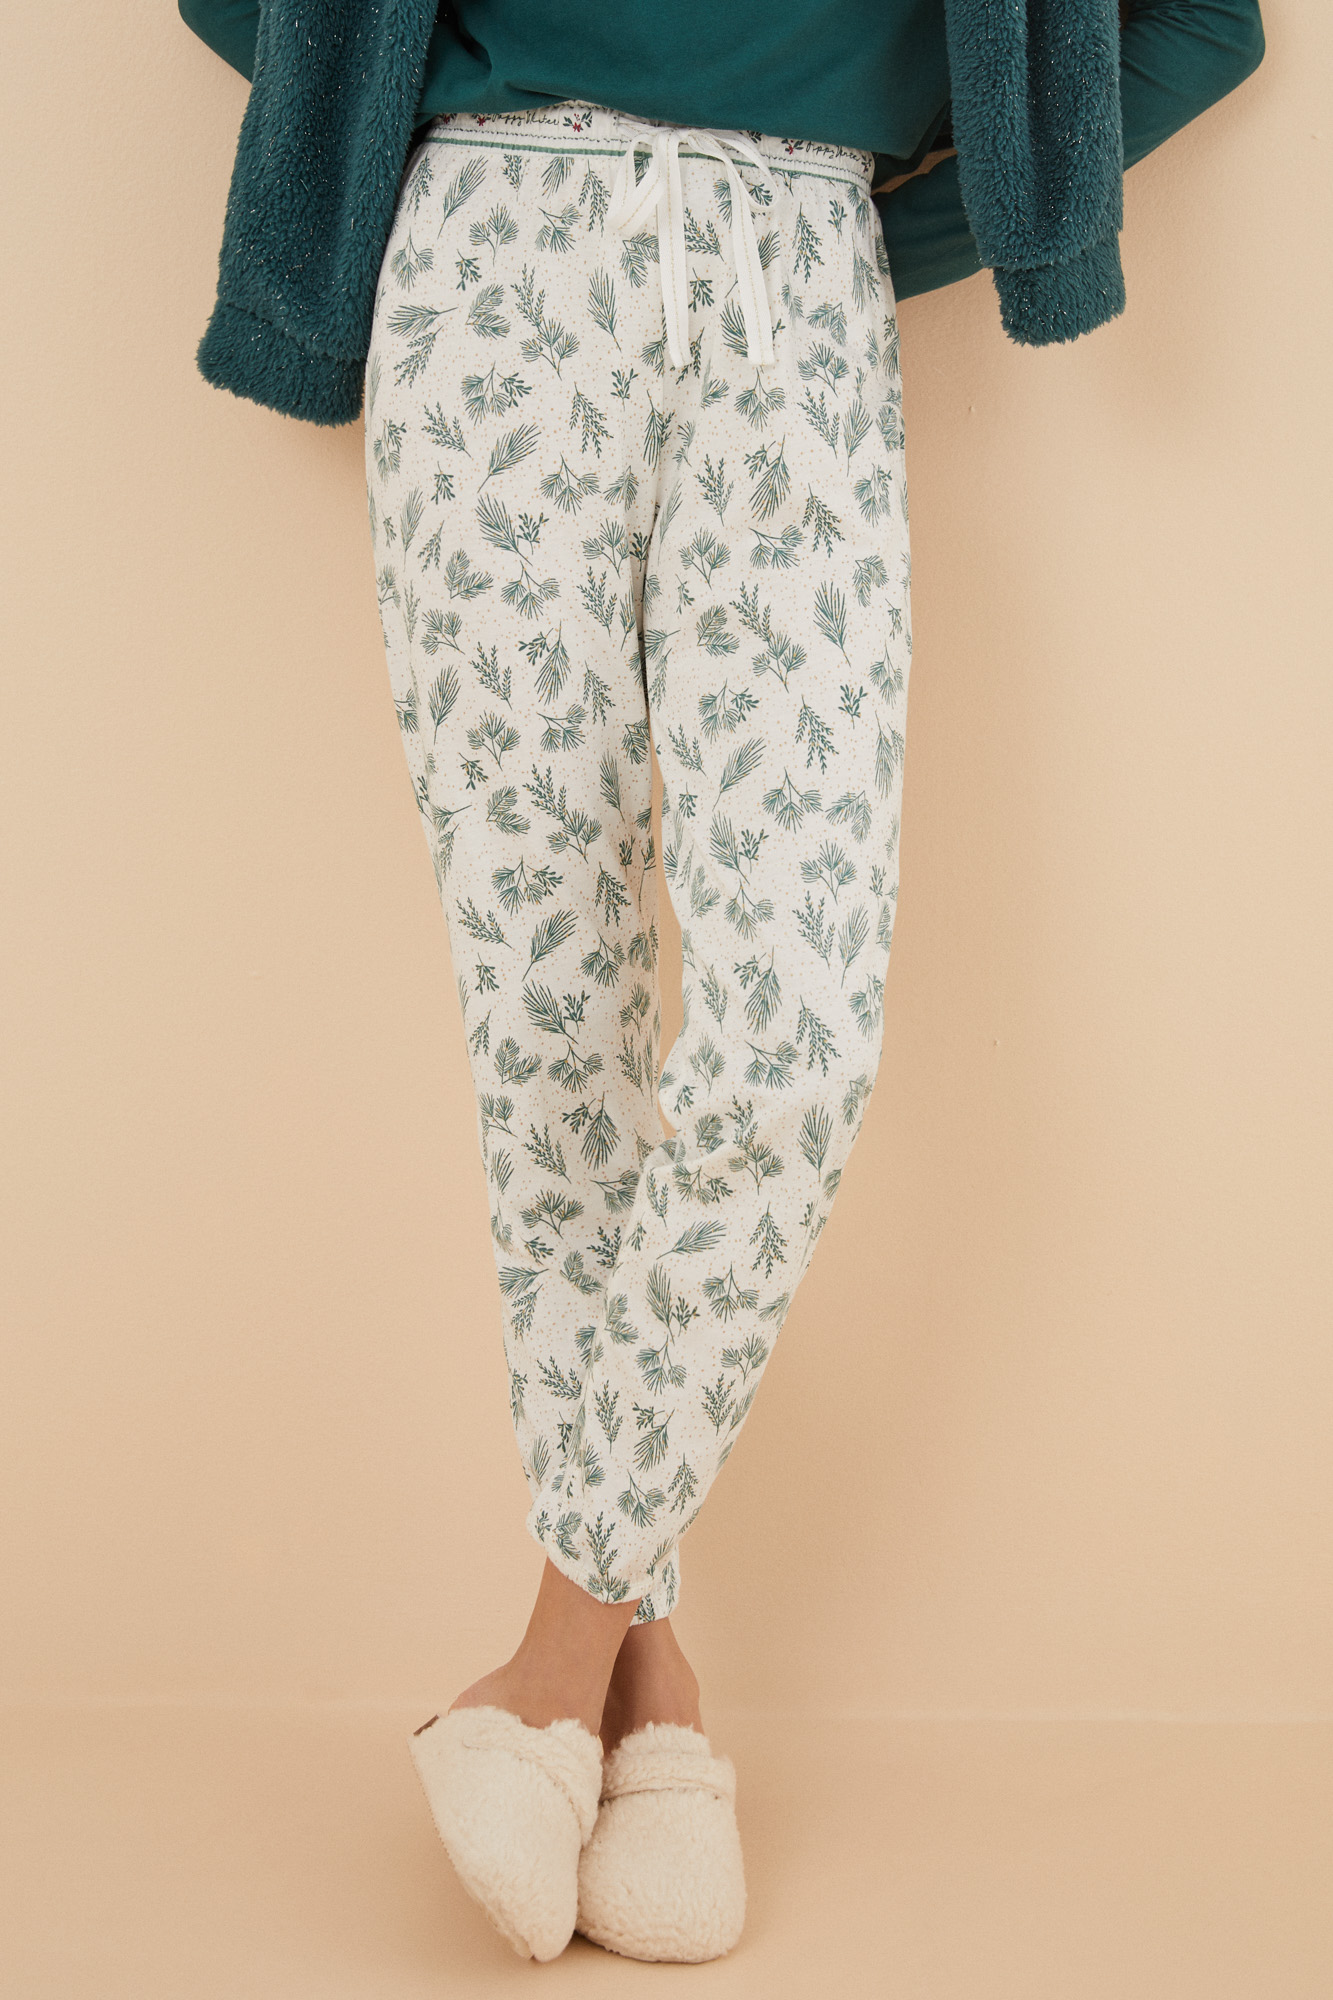 Pantalón pijama 100% algodón hojas | Ropa de dormir de mujer y homewear | WomenSecret